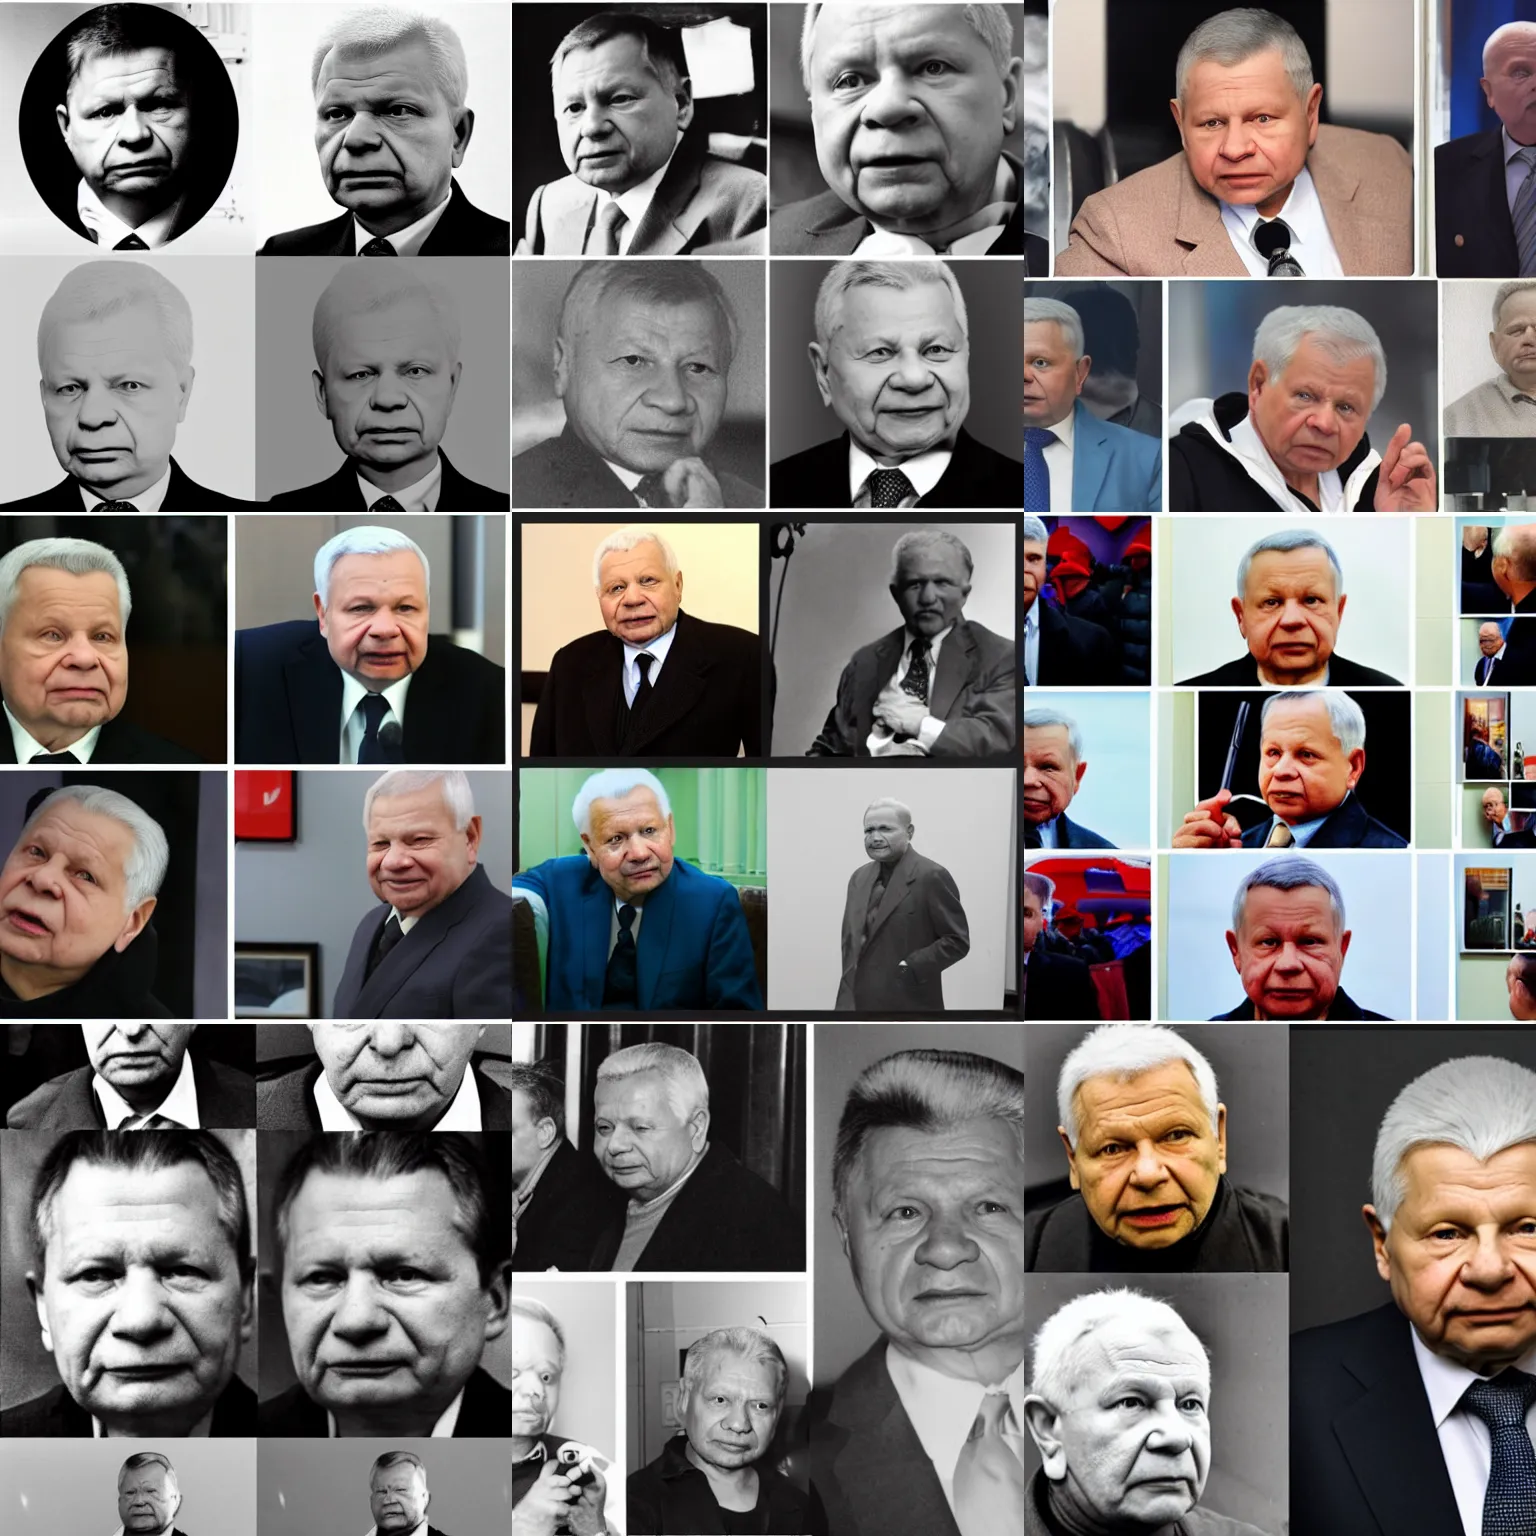 Prompt: images of lech kaczynski